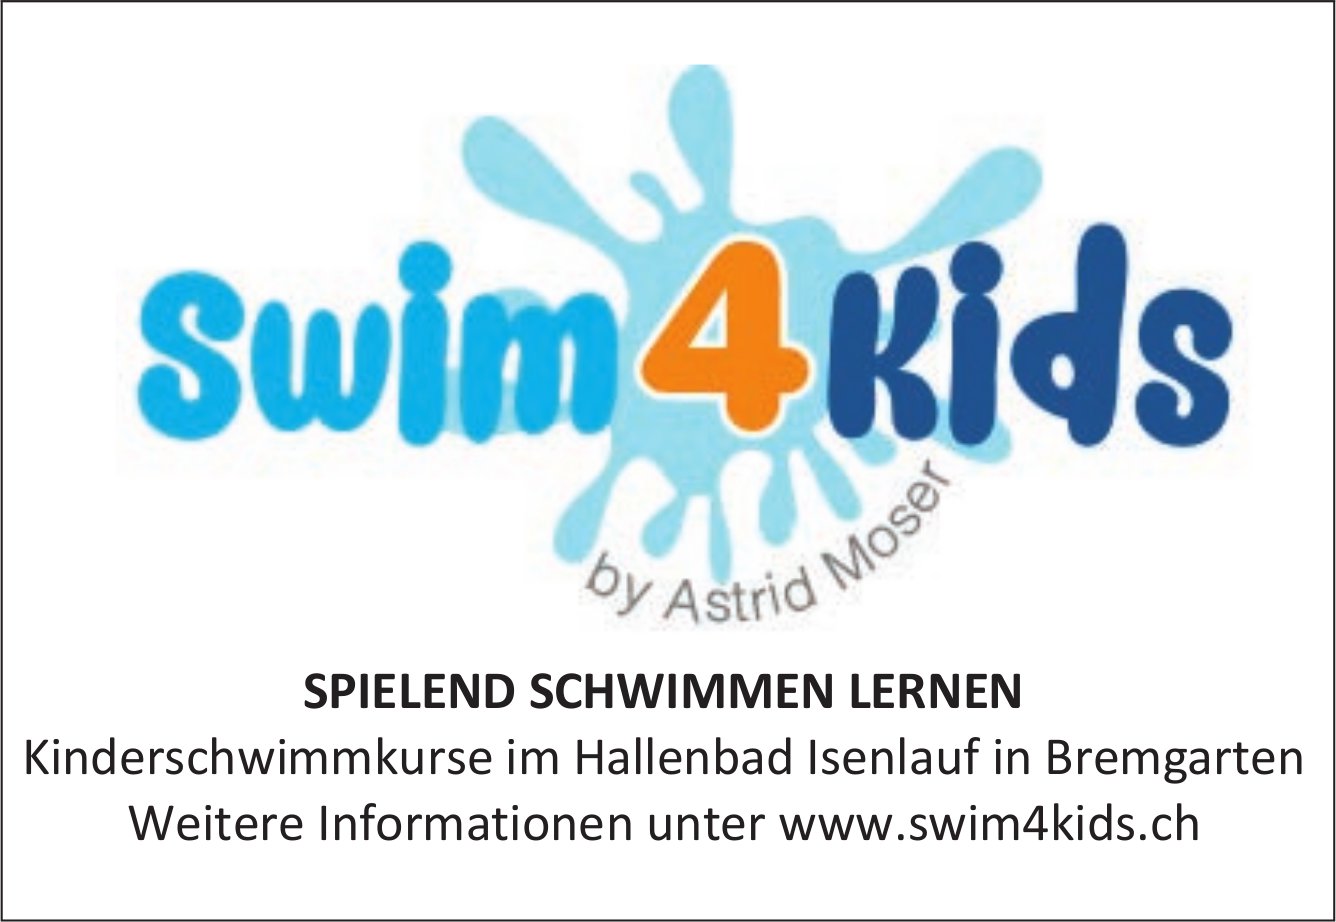 Swim4kids, Bremgarten - Kinderschwimmkurse